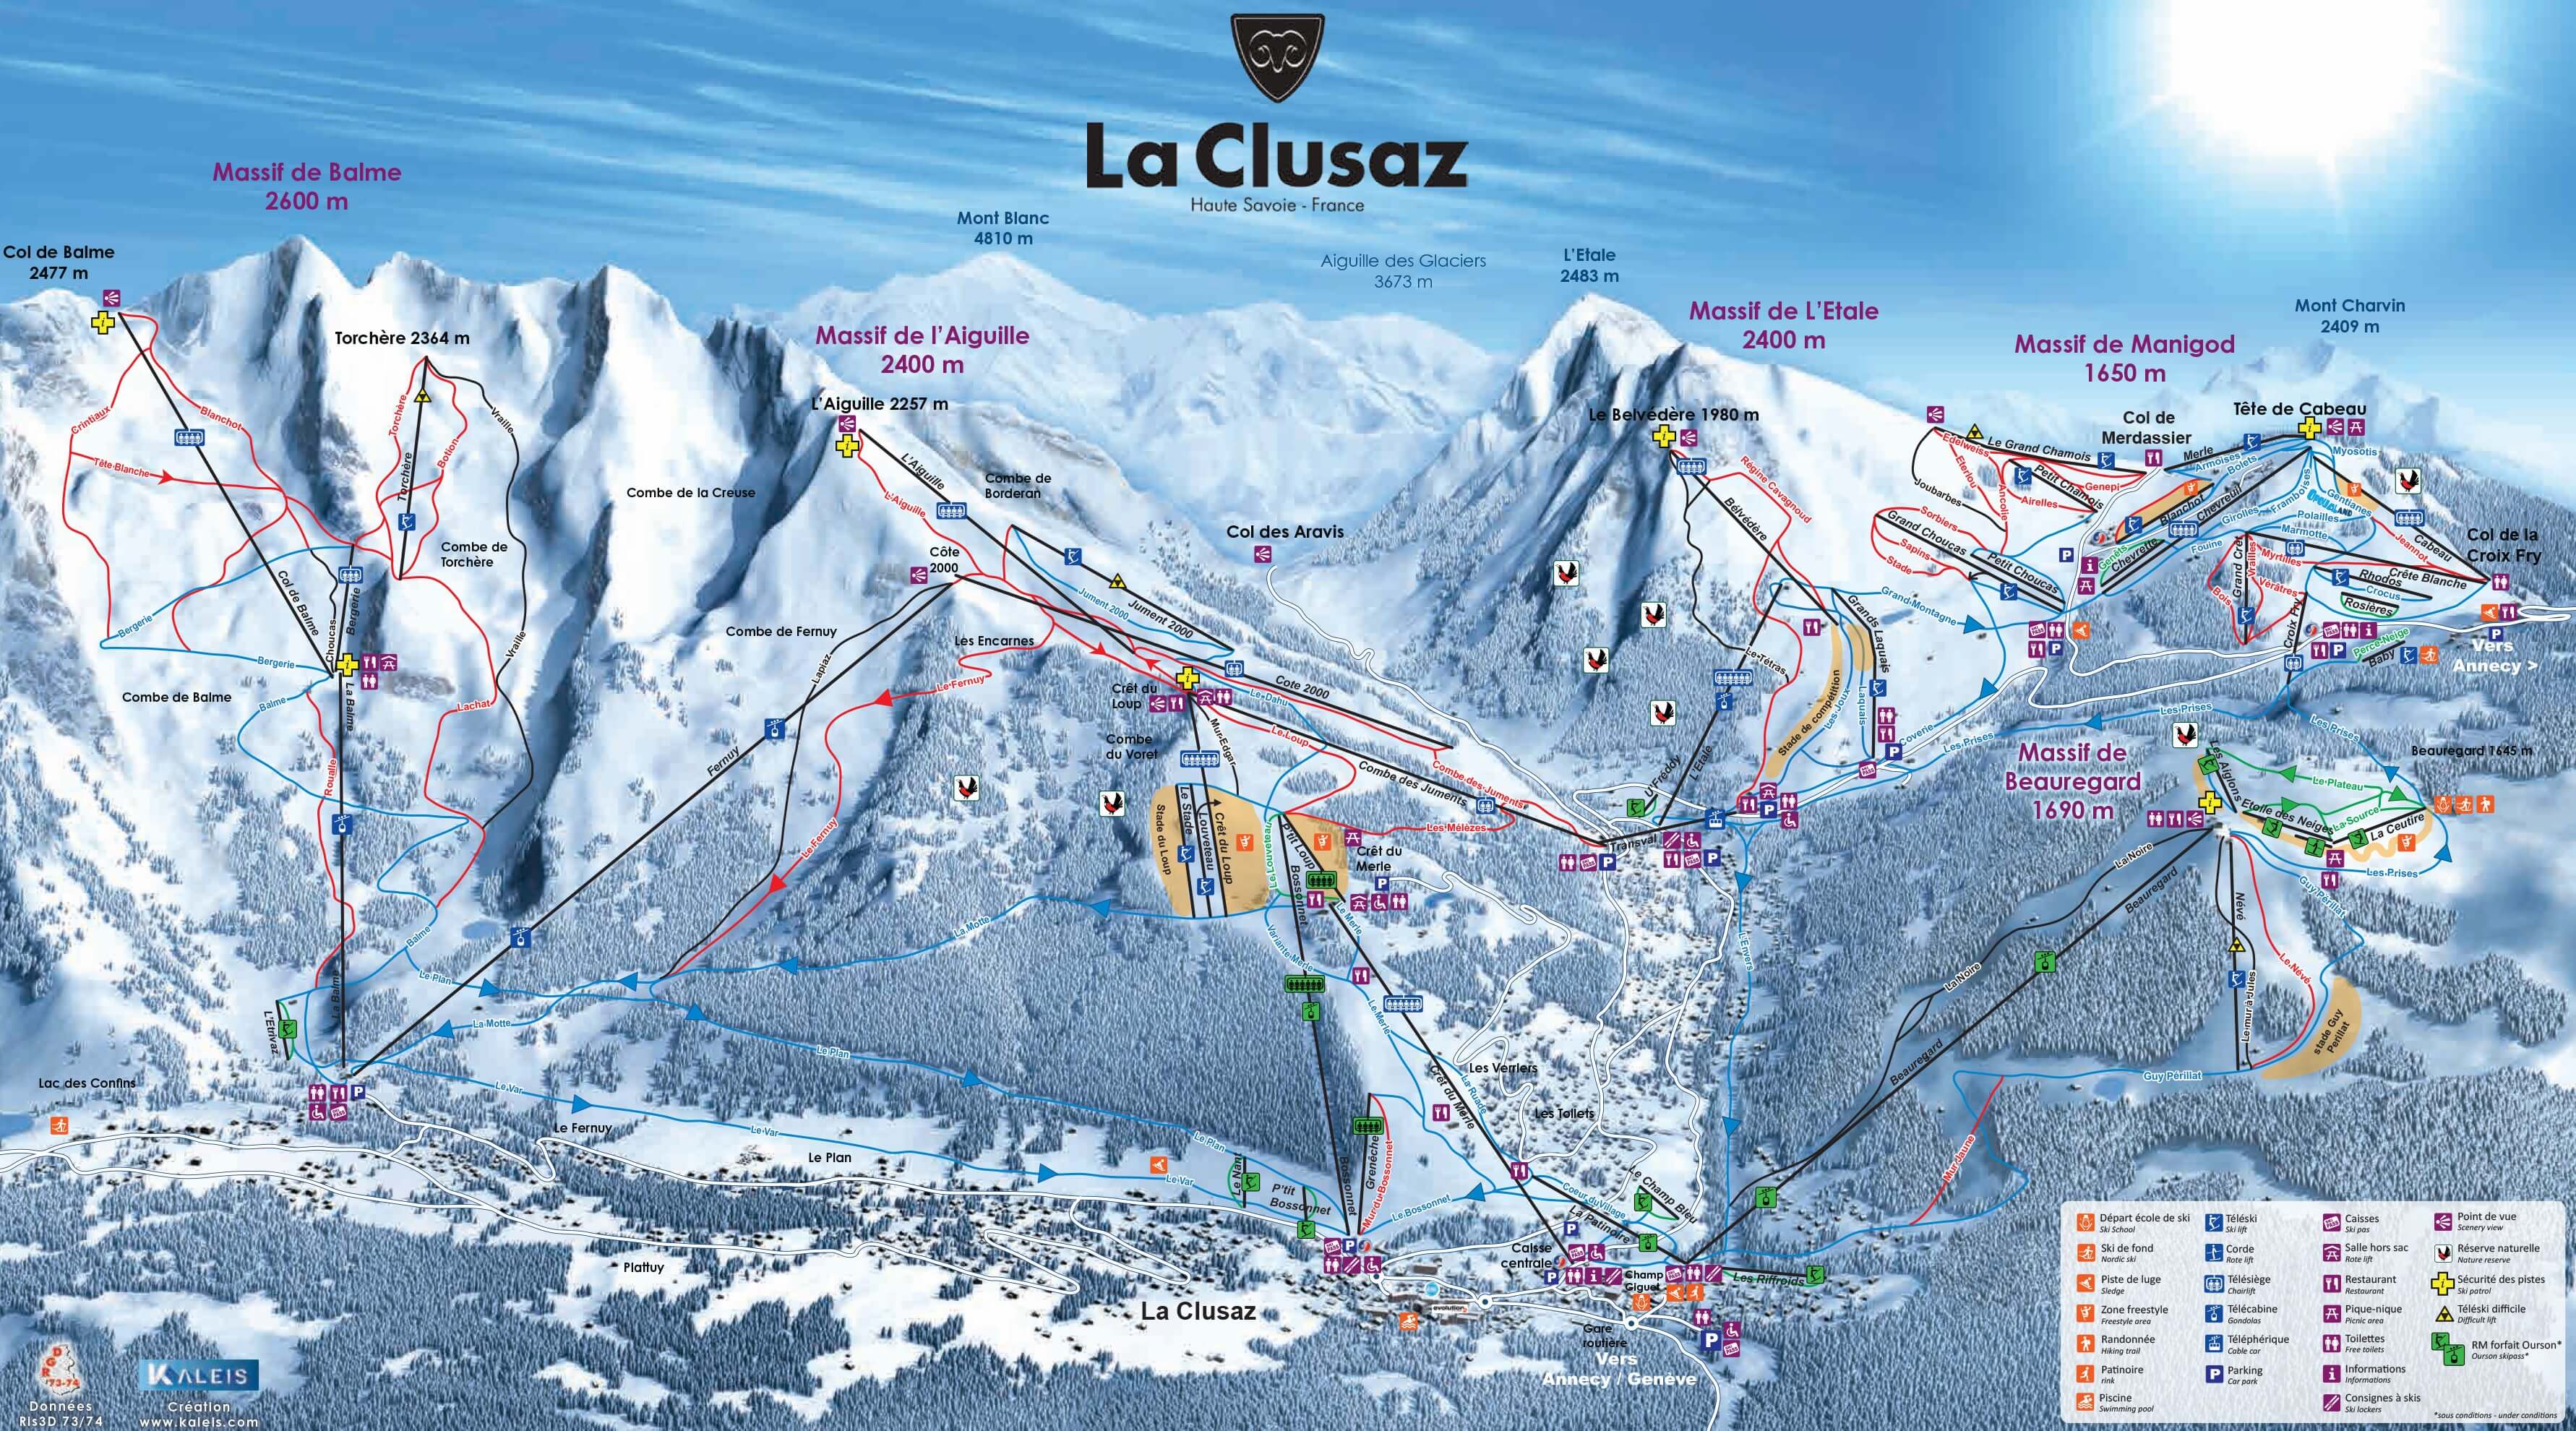 La Clusaz slopes